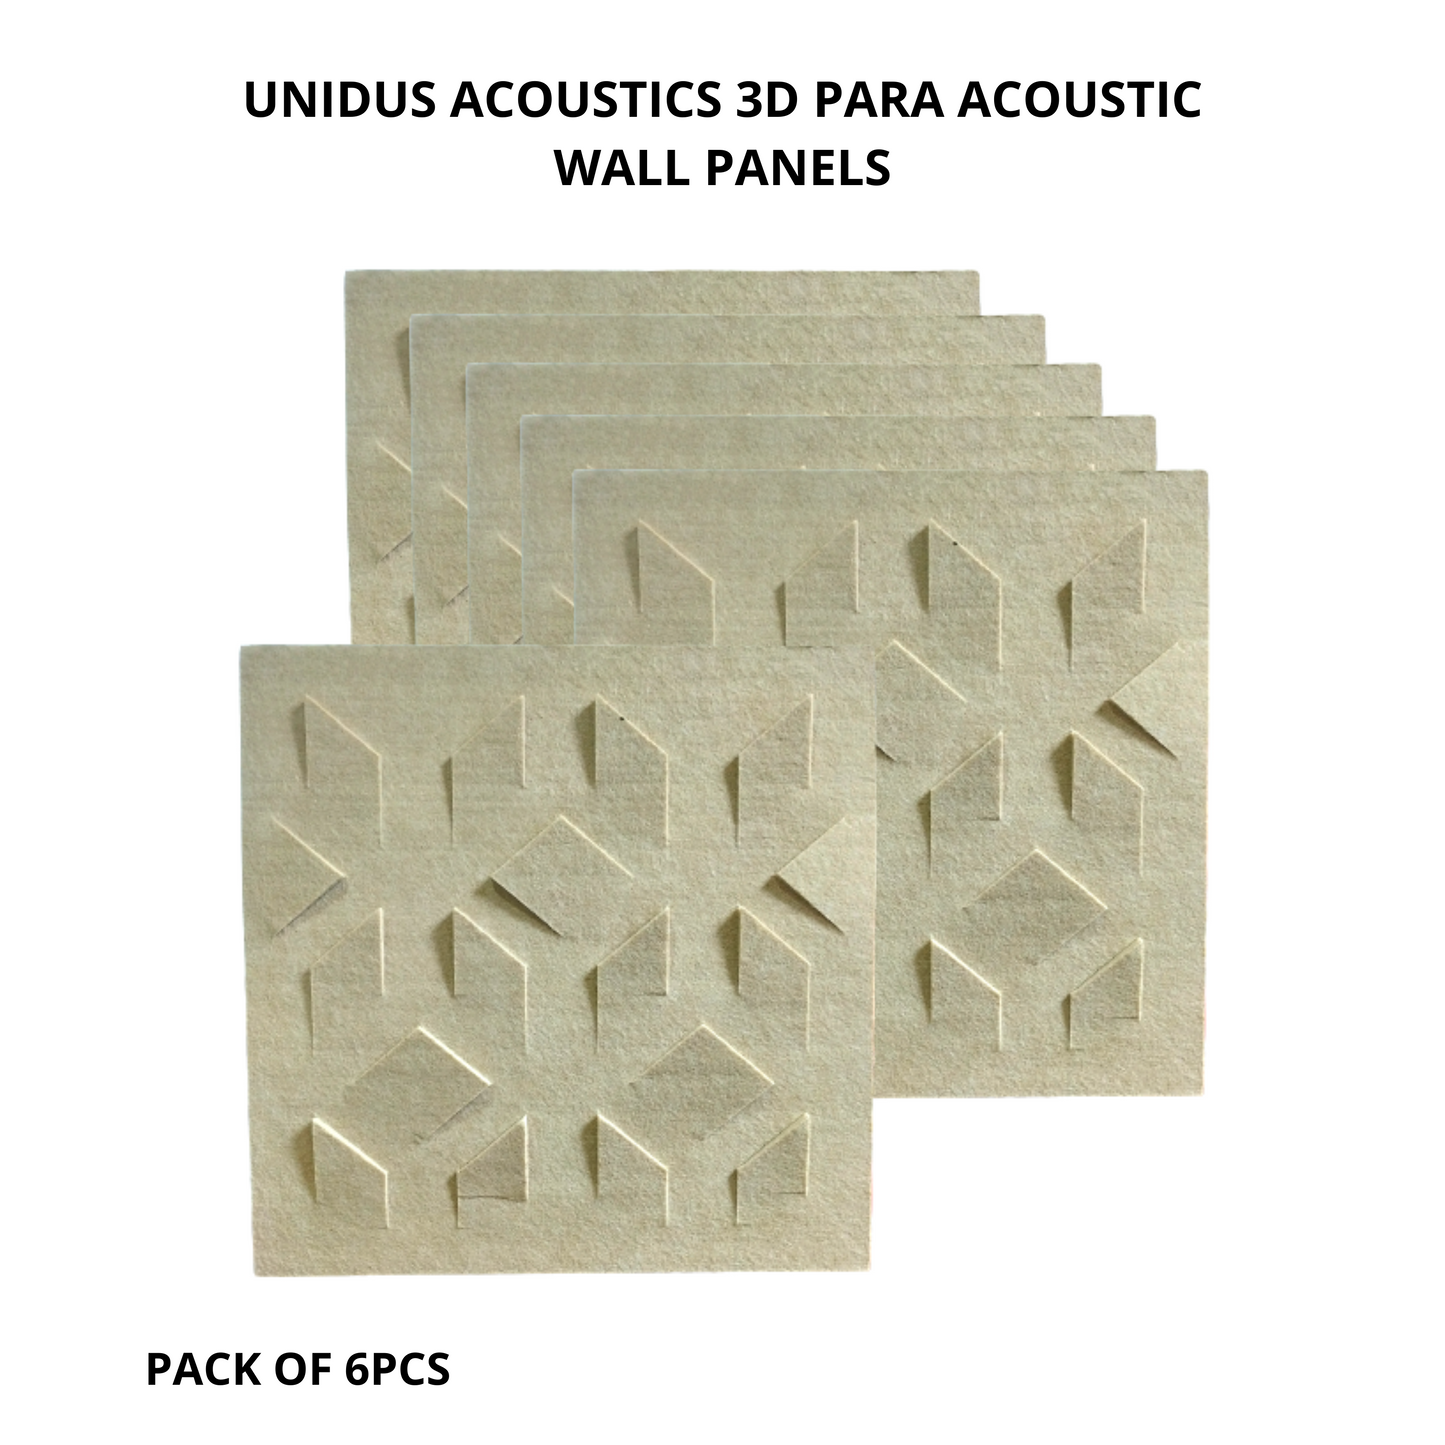 3D Blade Acoustic Wall Panels, 12"x12"x 9mm, Desert Sand Soundproof Panels | Acoustic Panel for Soundproofing